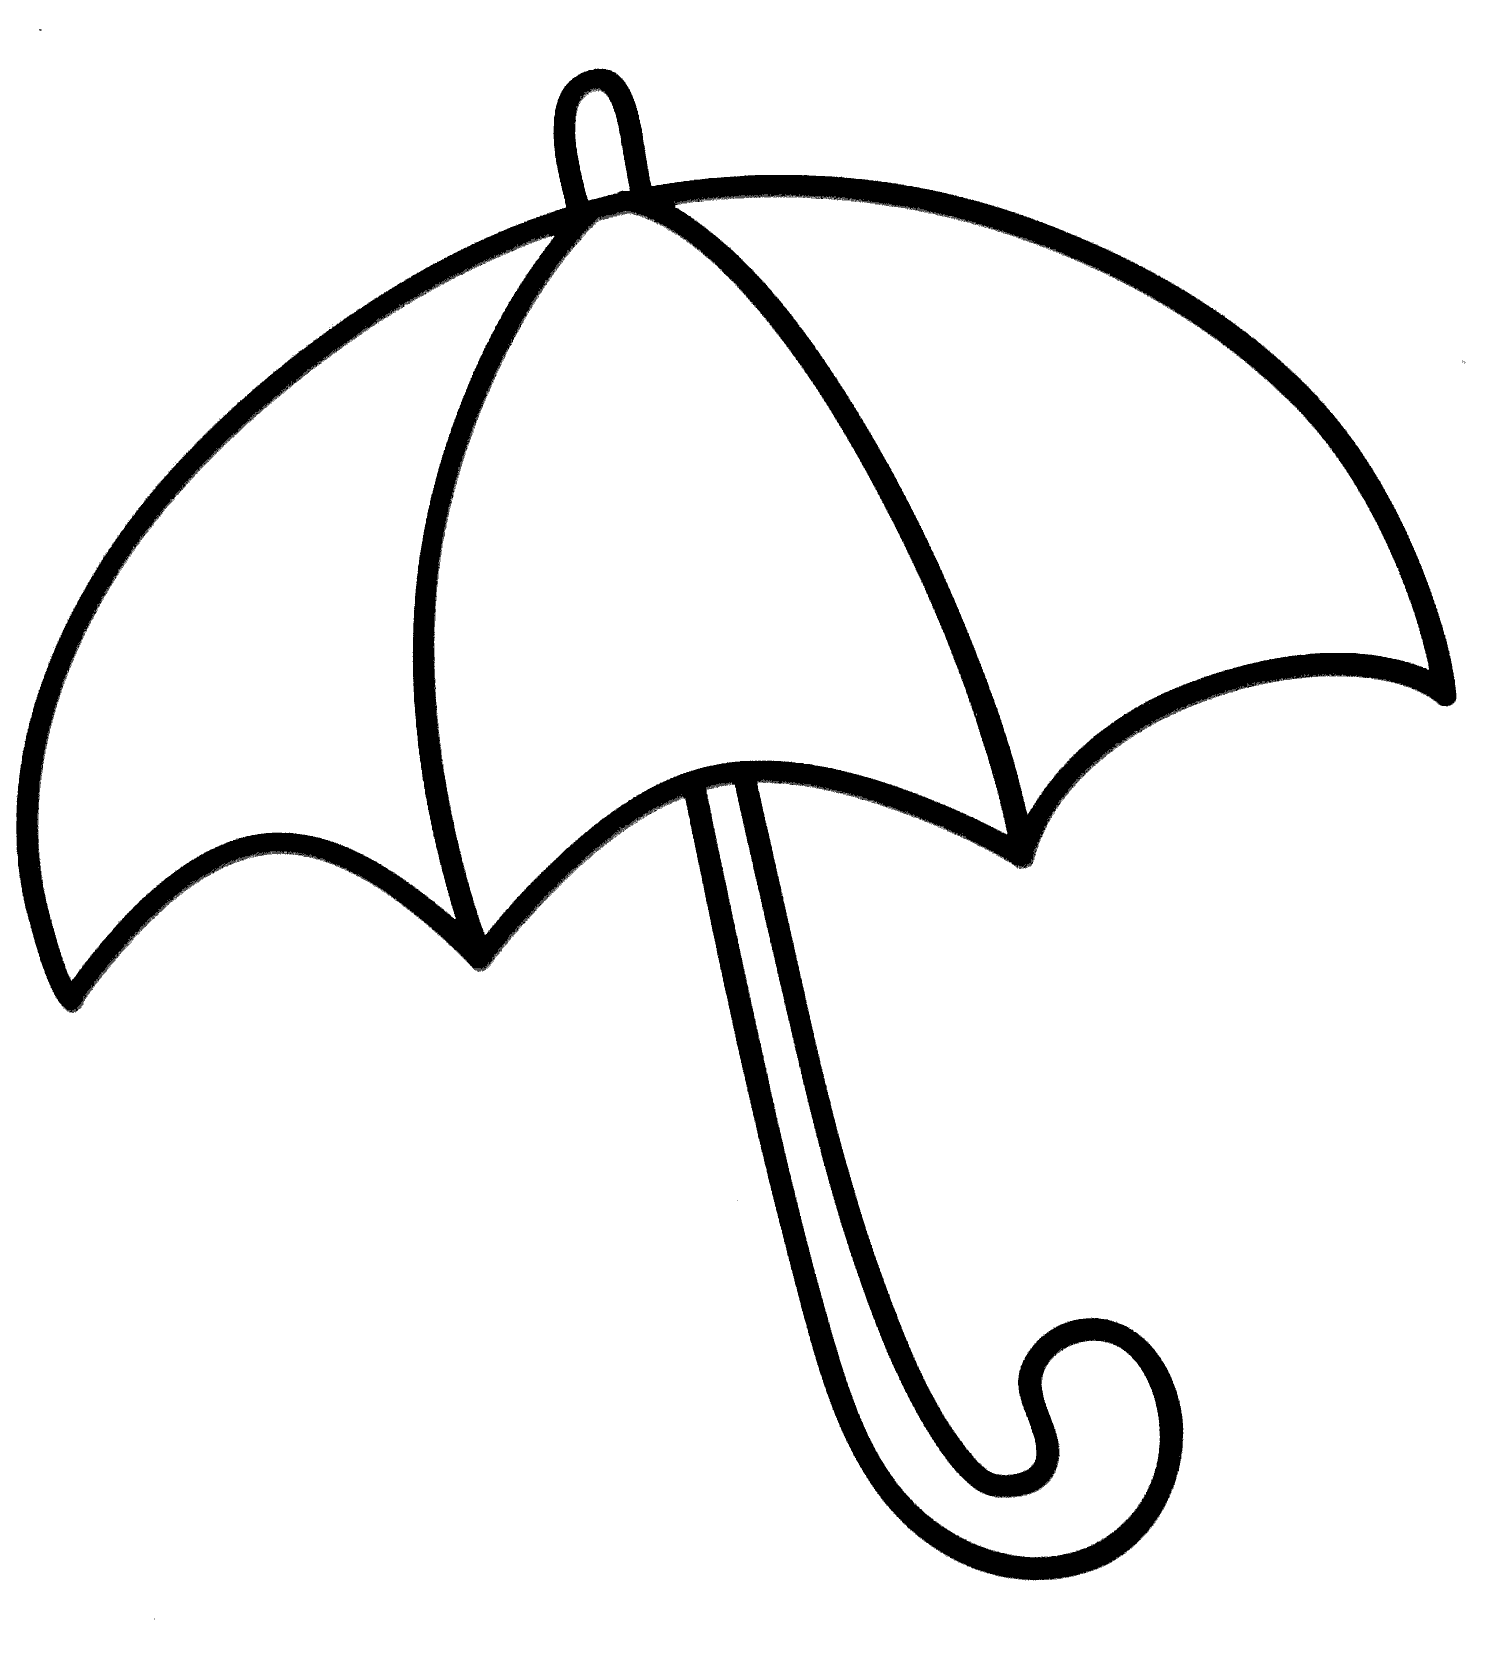 Free Printable Umbrella Template - Printable World Holiday